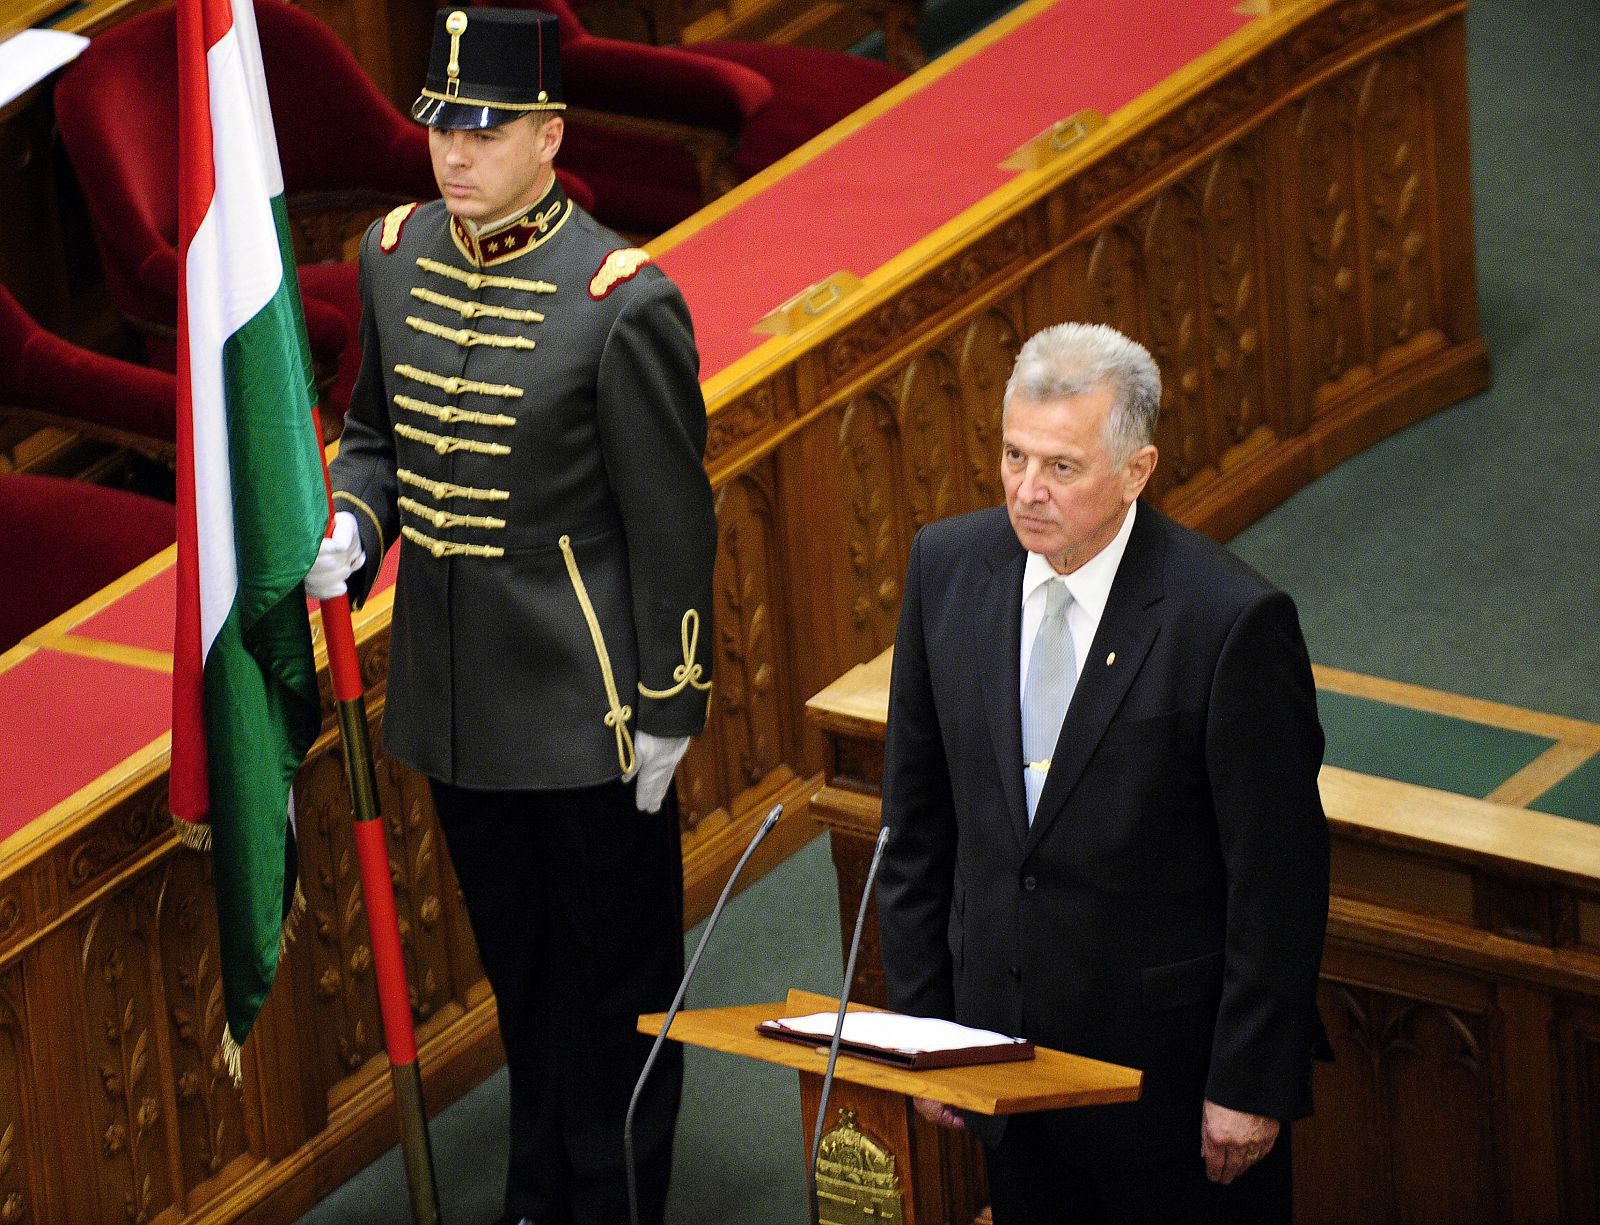 Imagen de archivo tomada en junio de 2010 de Pal Schmitt durante su juramento del cargo ante el Parlamento.